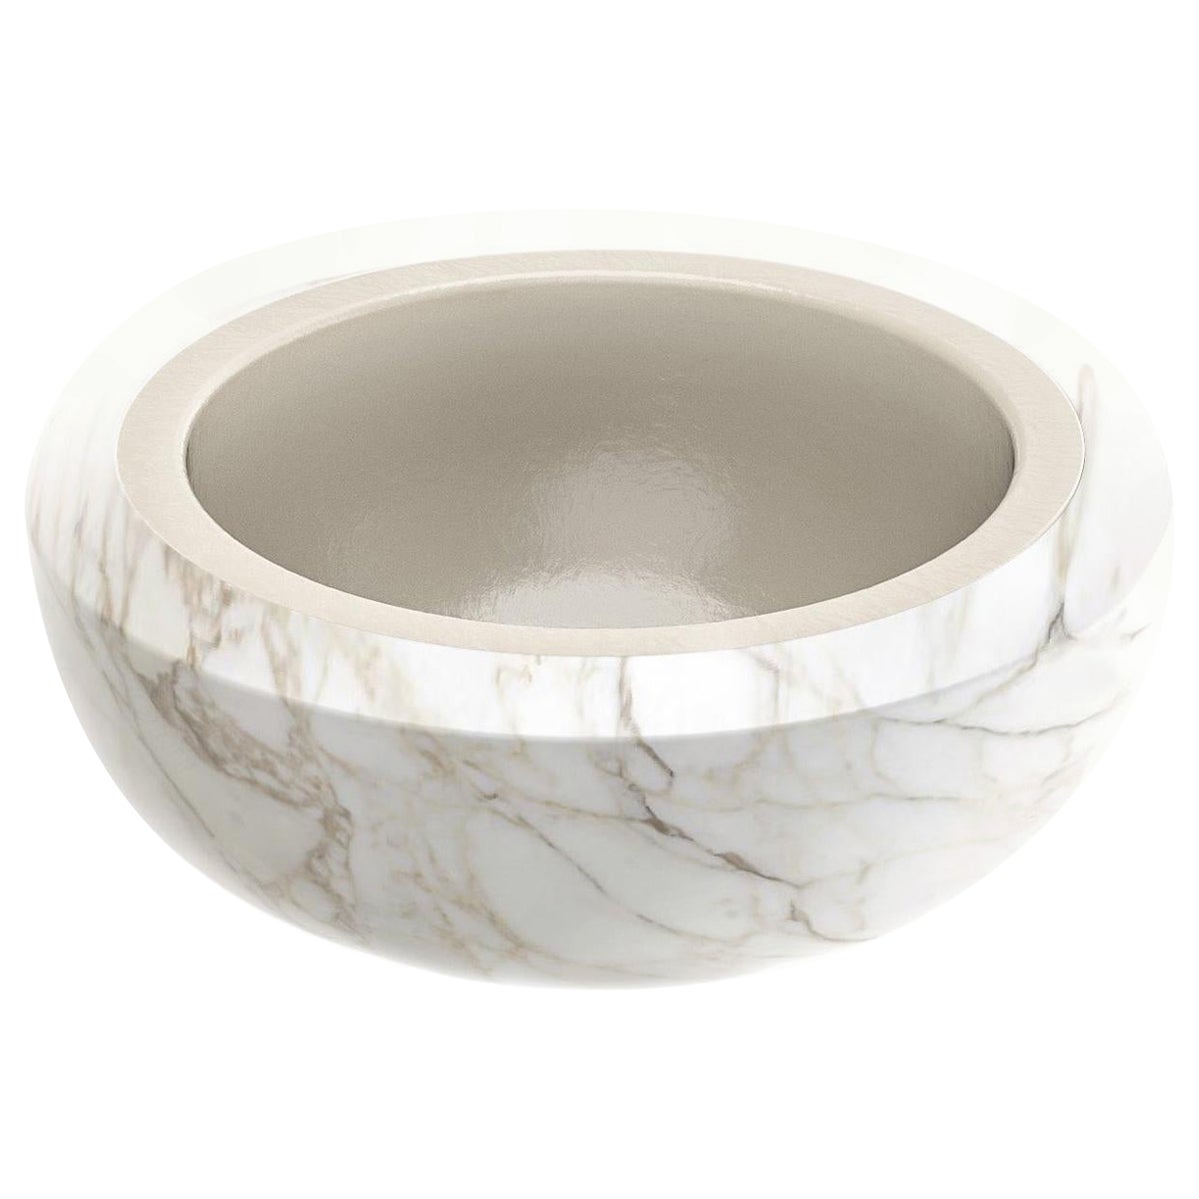 Cup Washbasin by Marmi Serafini For Sale